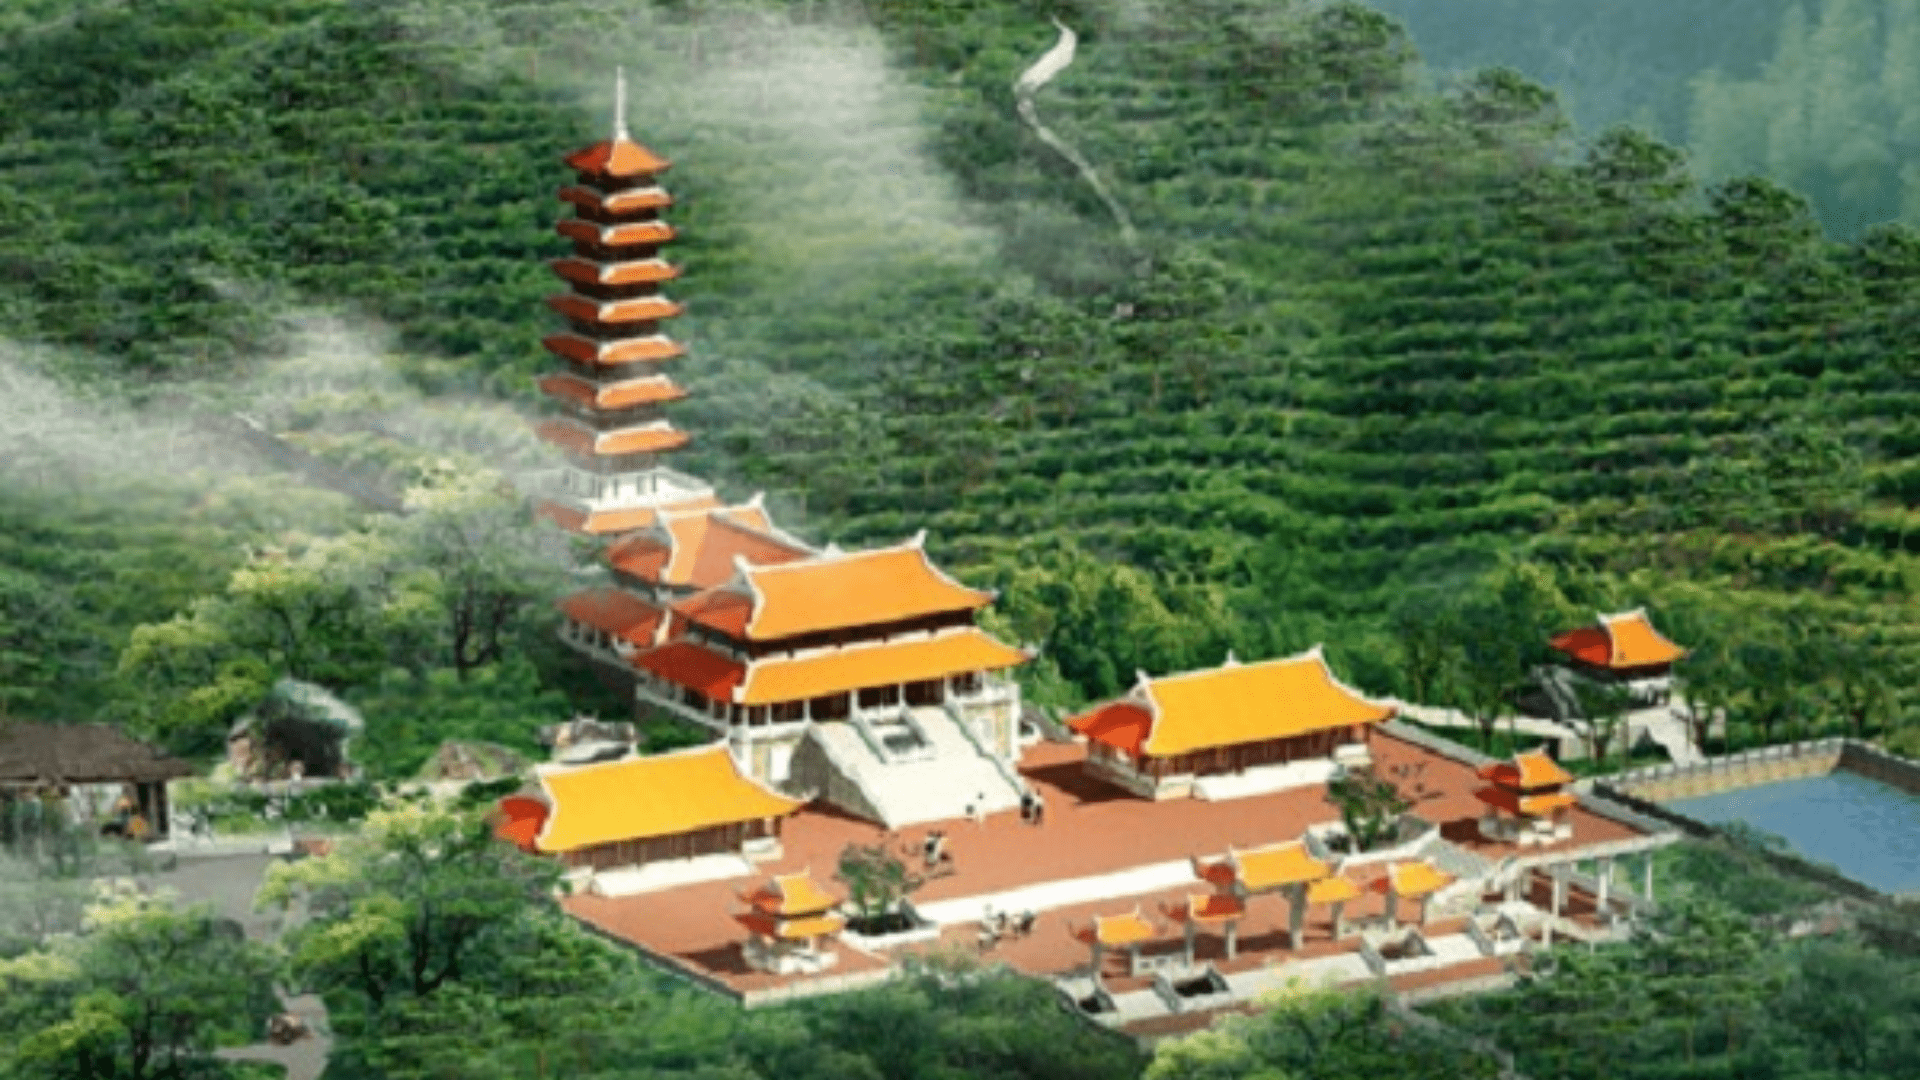 Chùa Đại Tuệ - Ngôi chùa với 600 năm tuổi